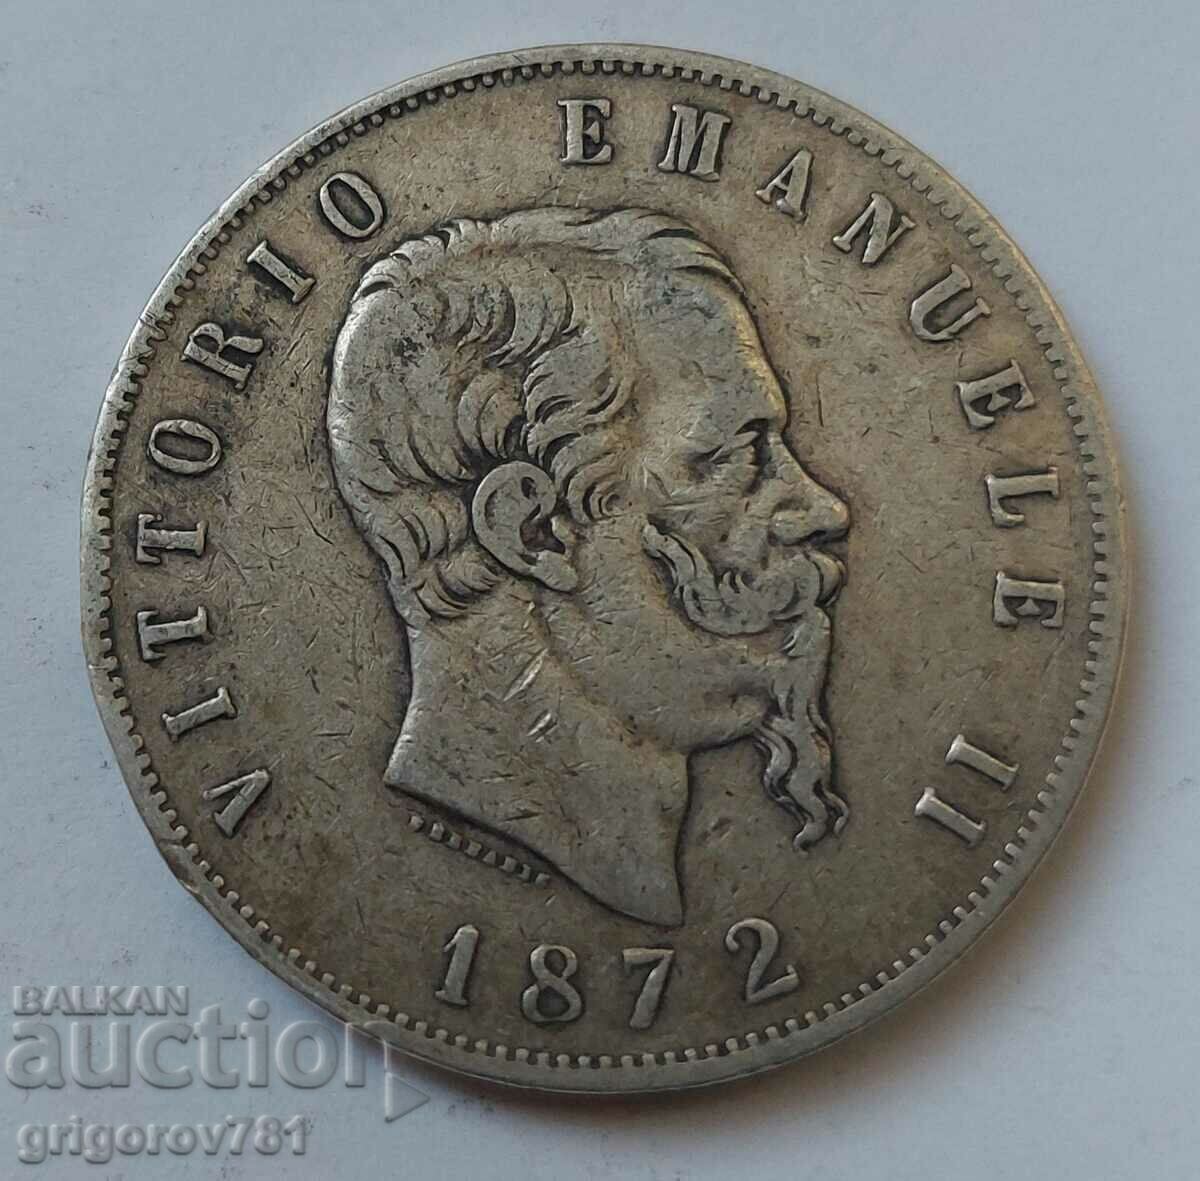 5 Lire Argint Italia 1872 M - Monedă de argint #220